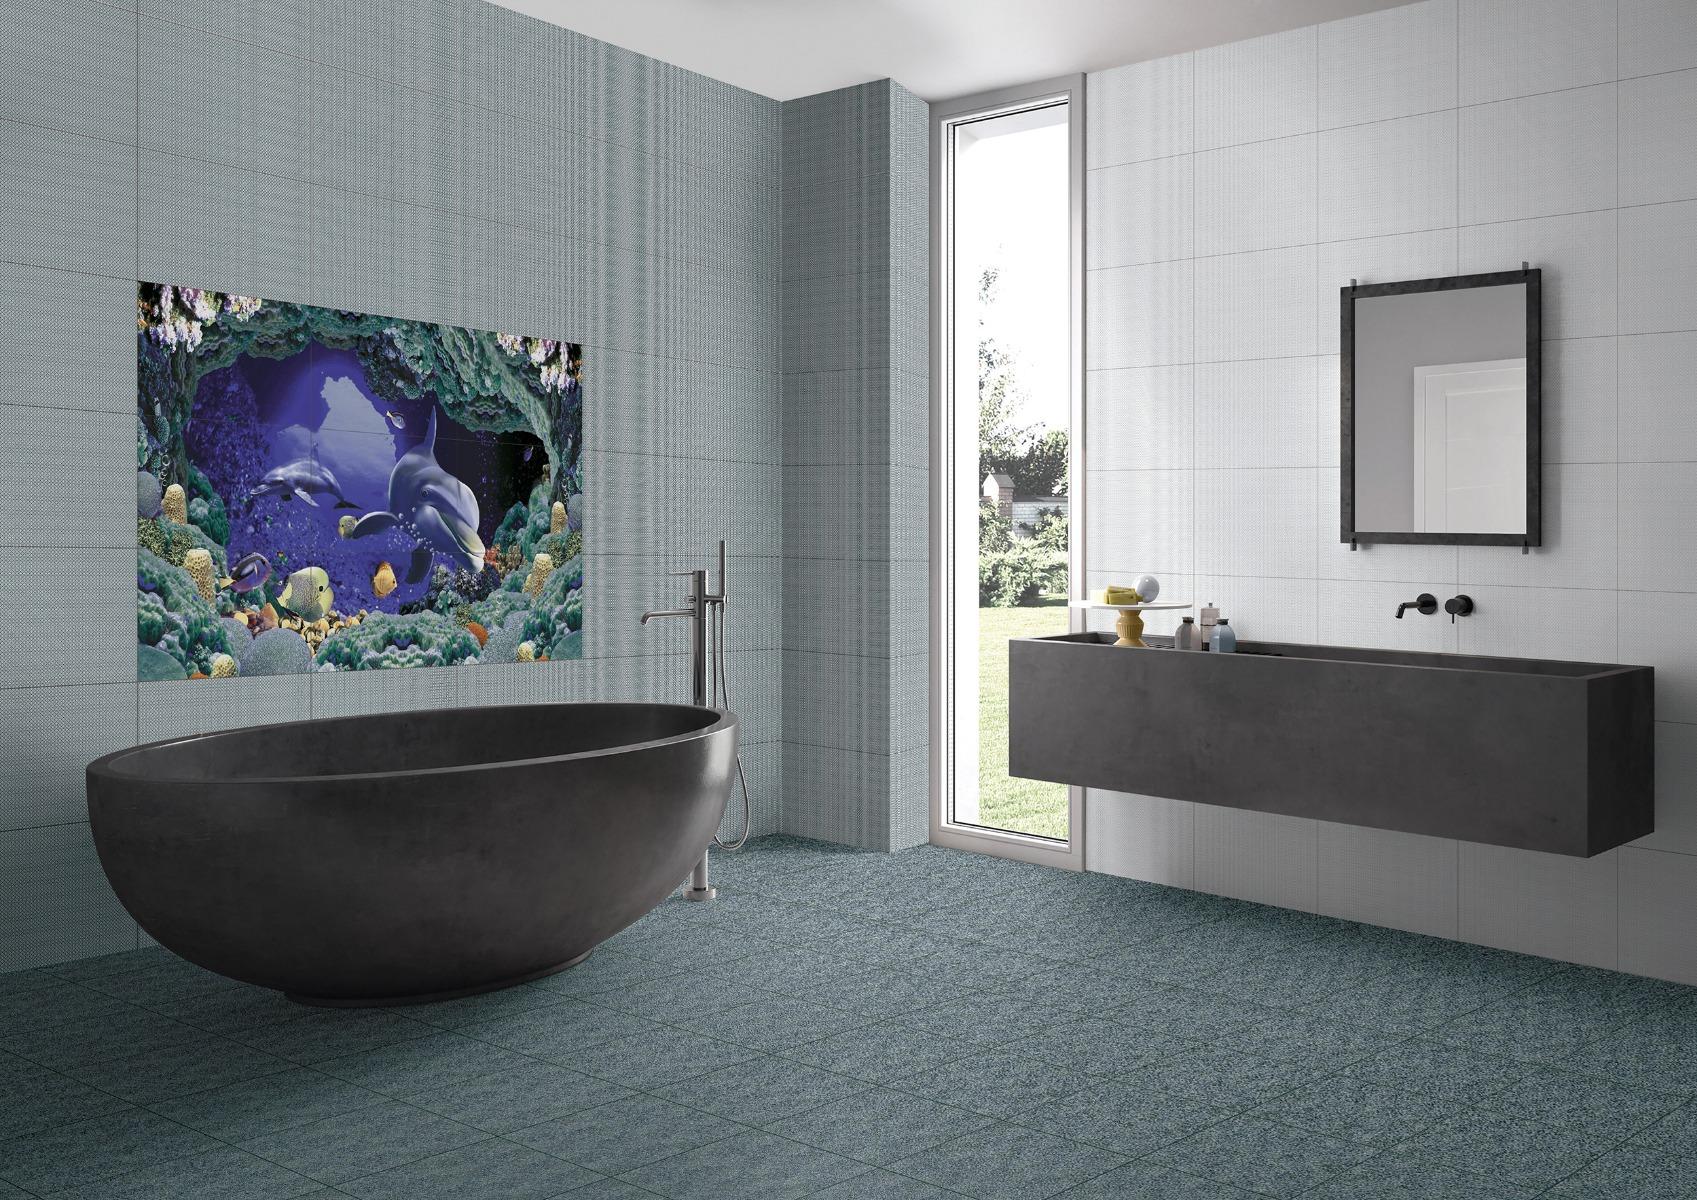 Estilo2.0 for Bathroom Tiles